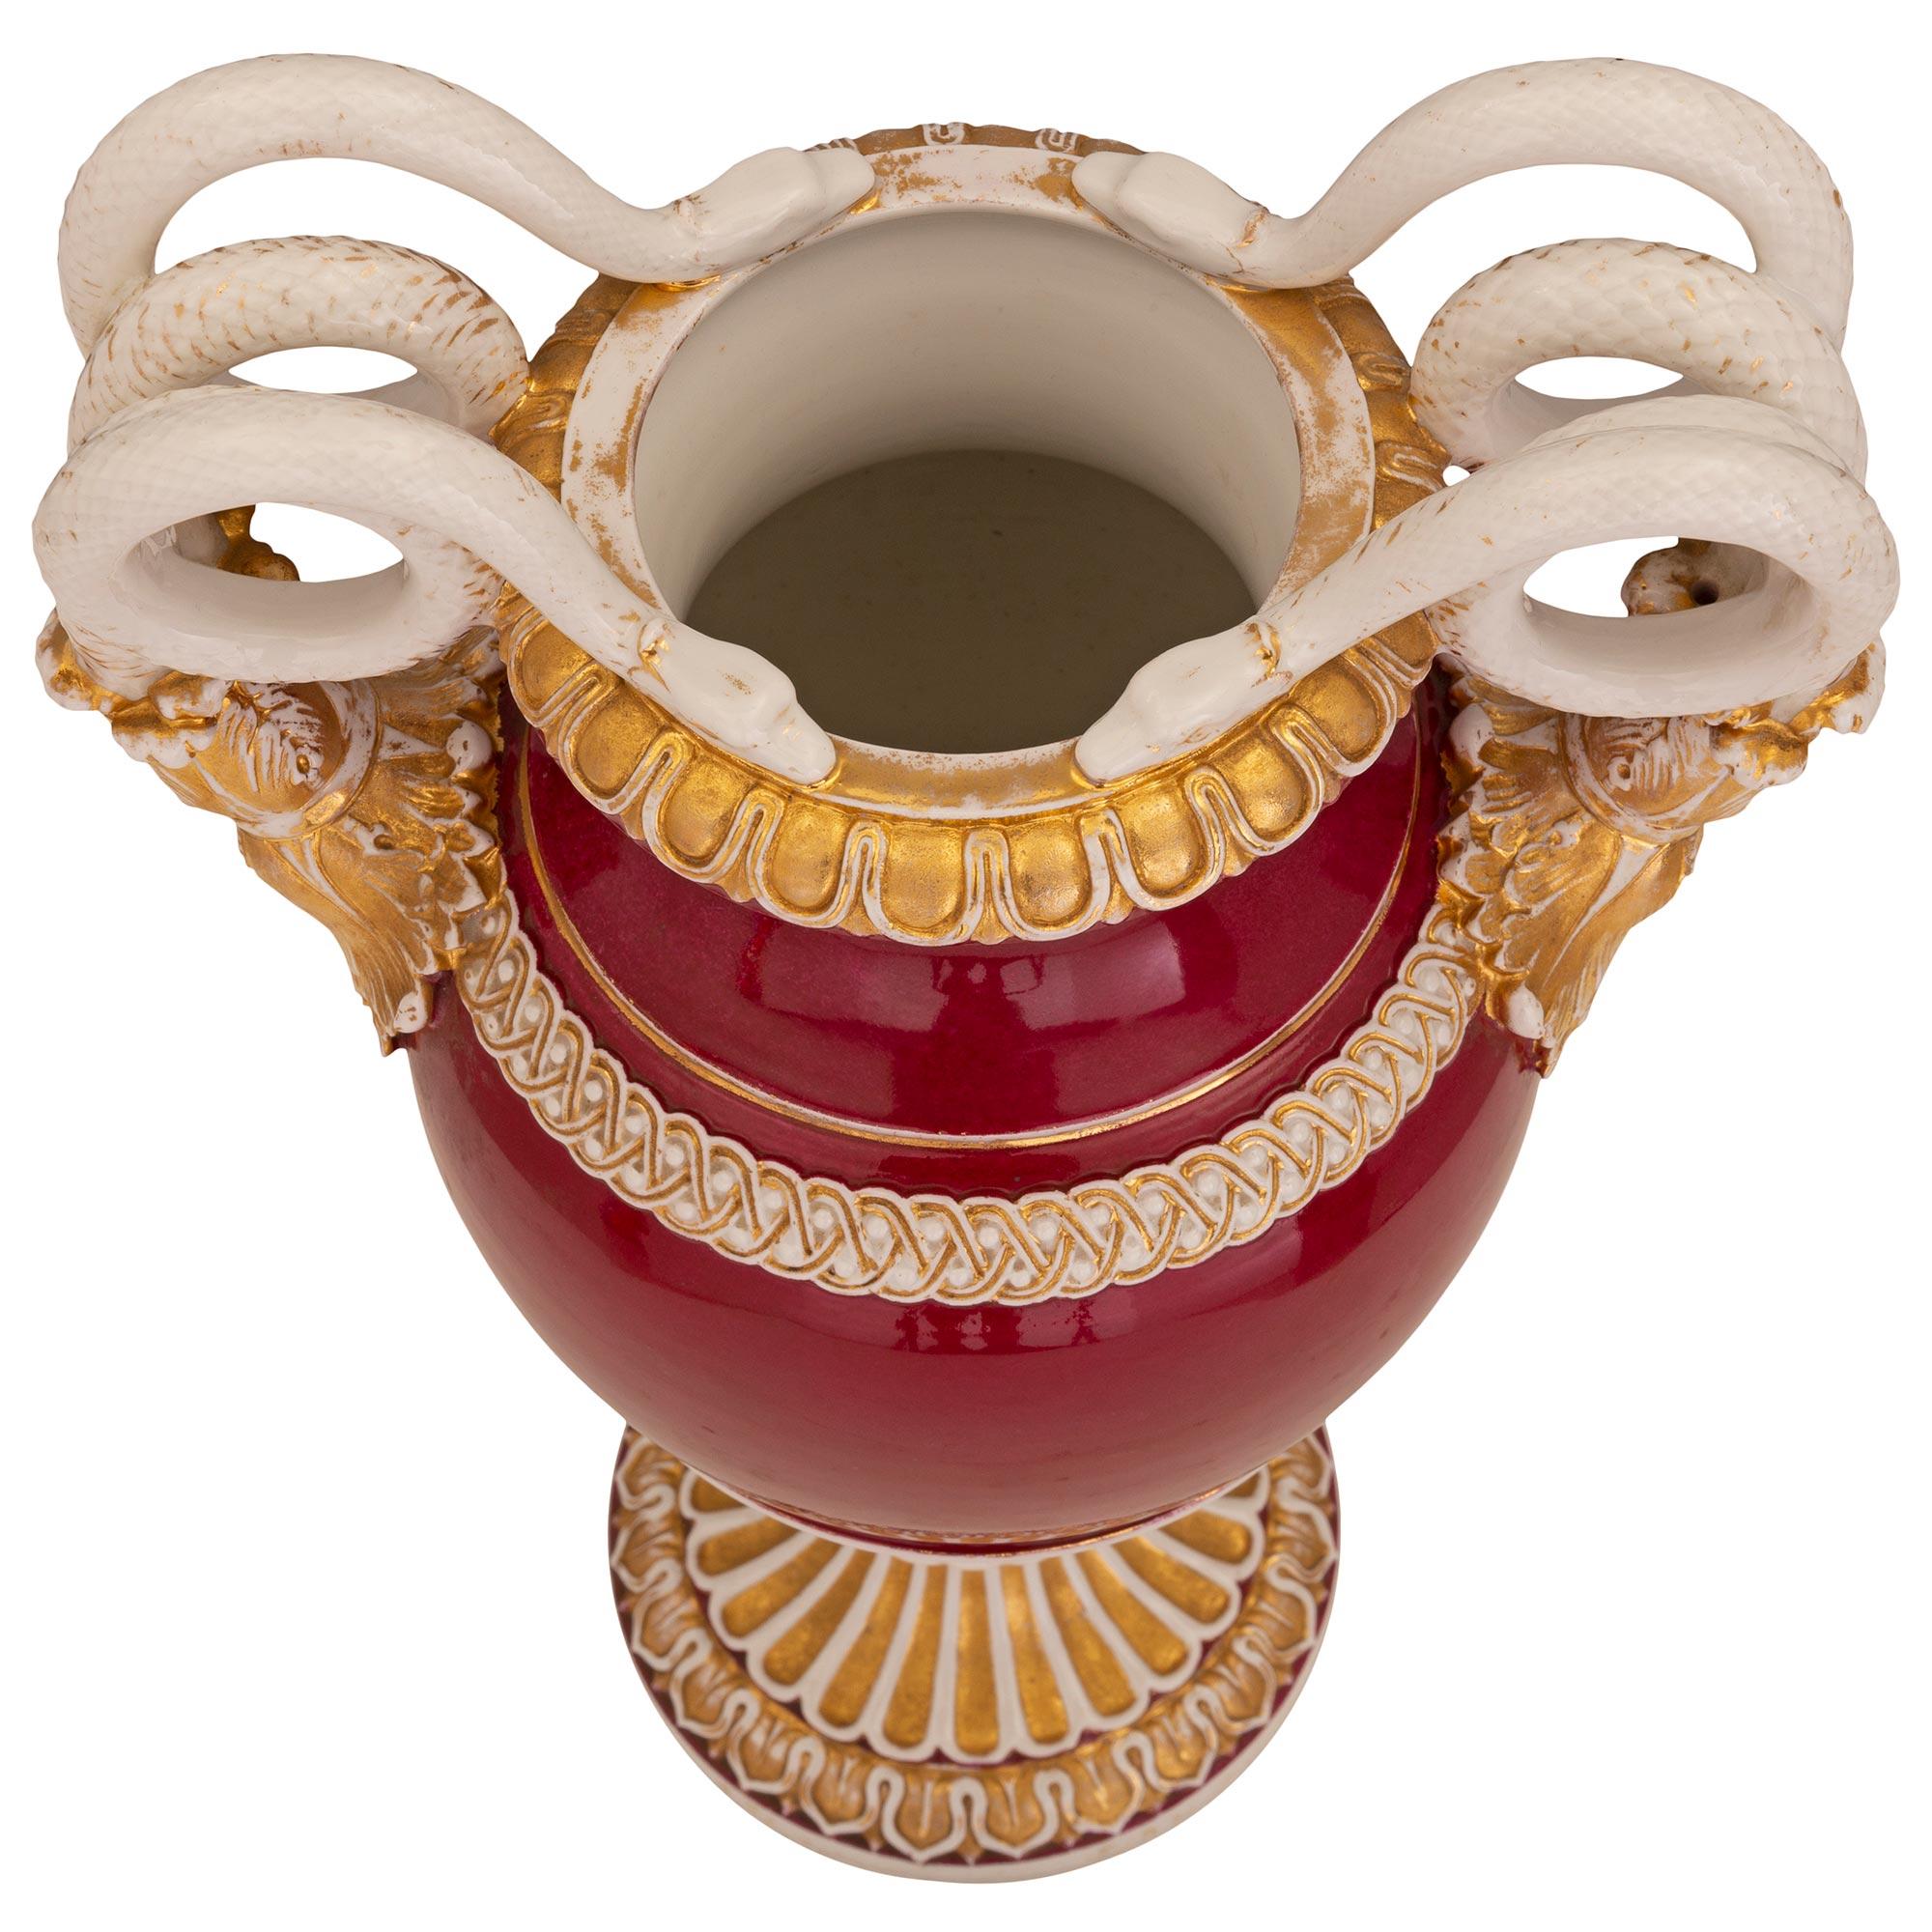 Une paire exceptionnelle et très décorative d'urnes en porcelaine de Meissen de style néo-classique du 19e siècle. Meissen du XIXe siècle. Chaque urne est surmontée d'une base circulaire avec une belle bande de feuillage enveloppante sous le socle